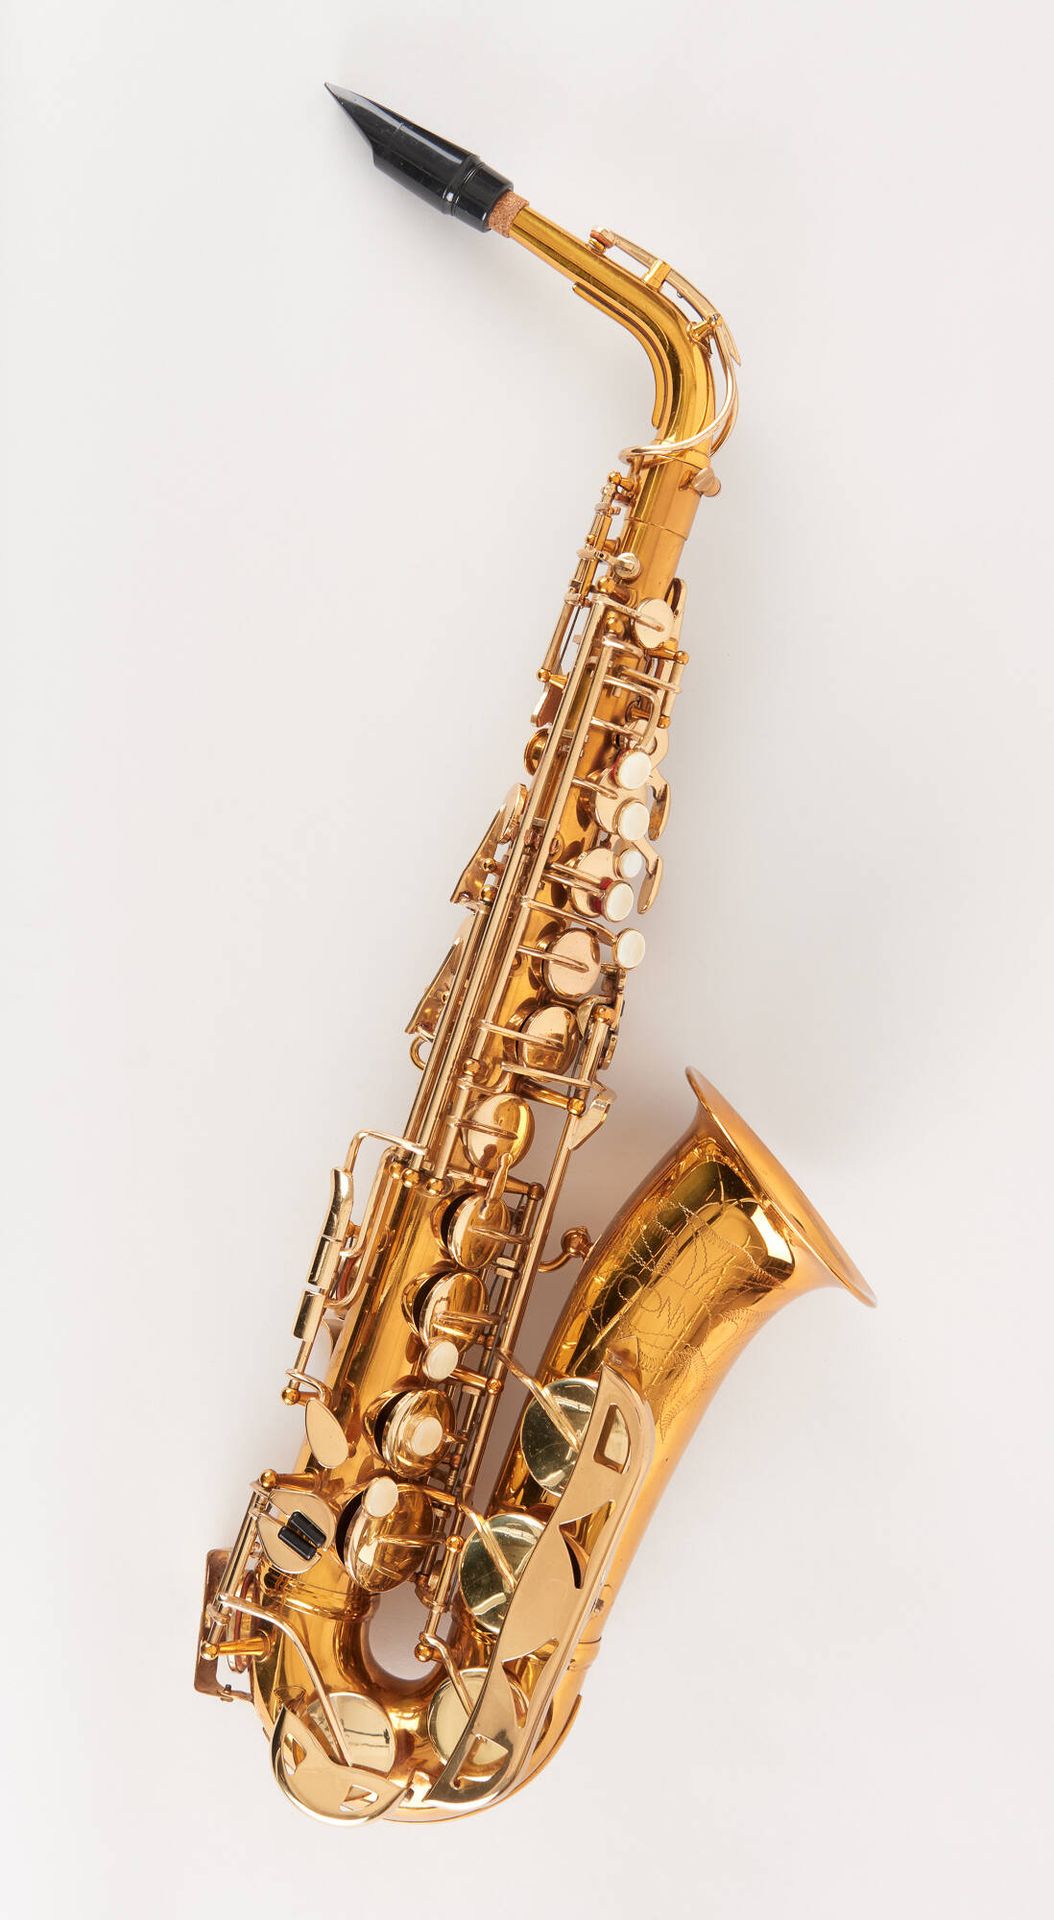 Conn. Instrument de musique: Saxophone ténor, modèle Selmer.
De marque Conn.
Num&hellip;